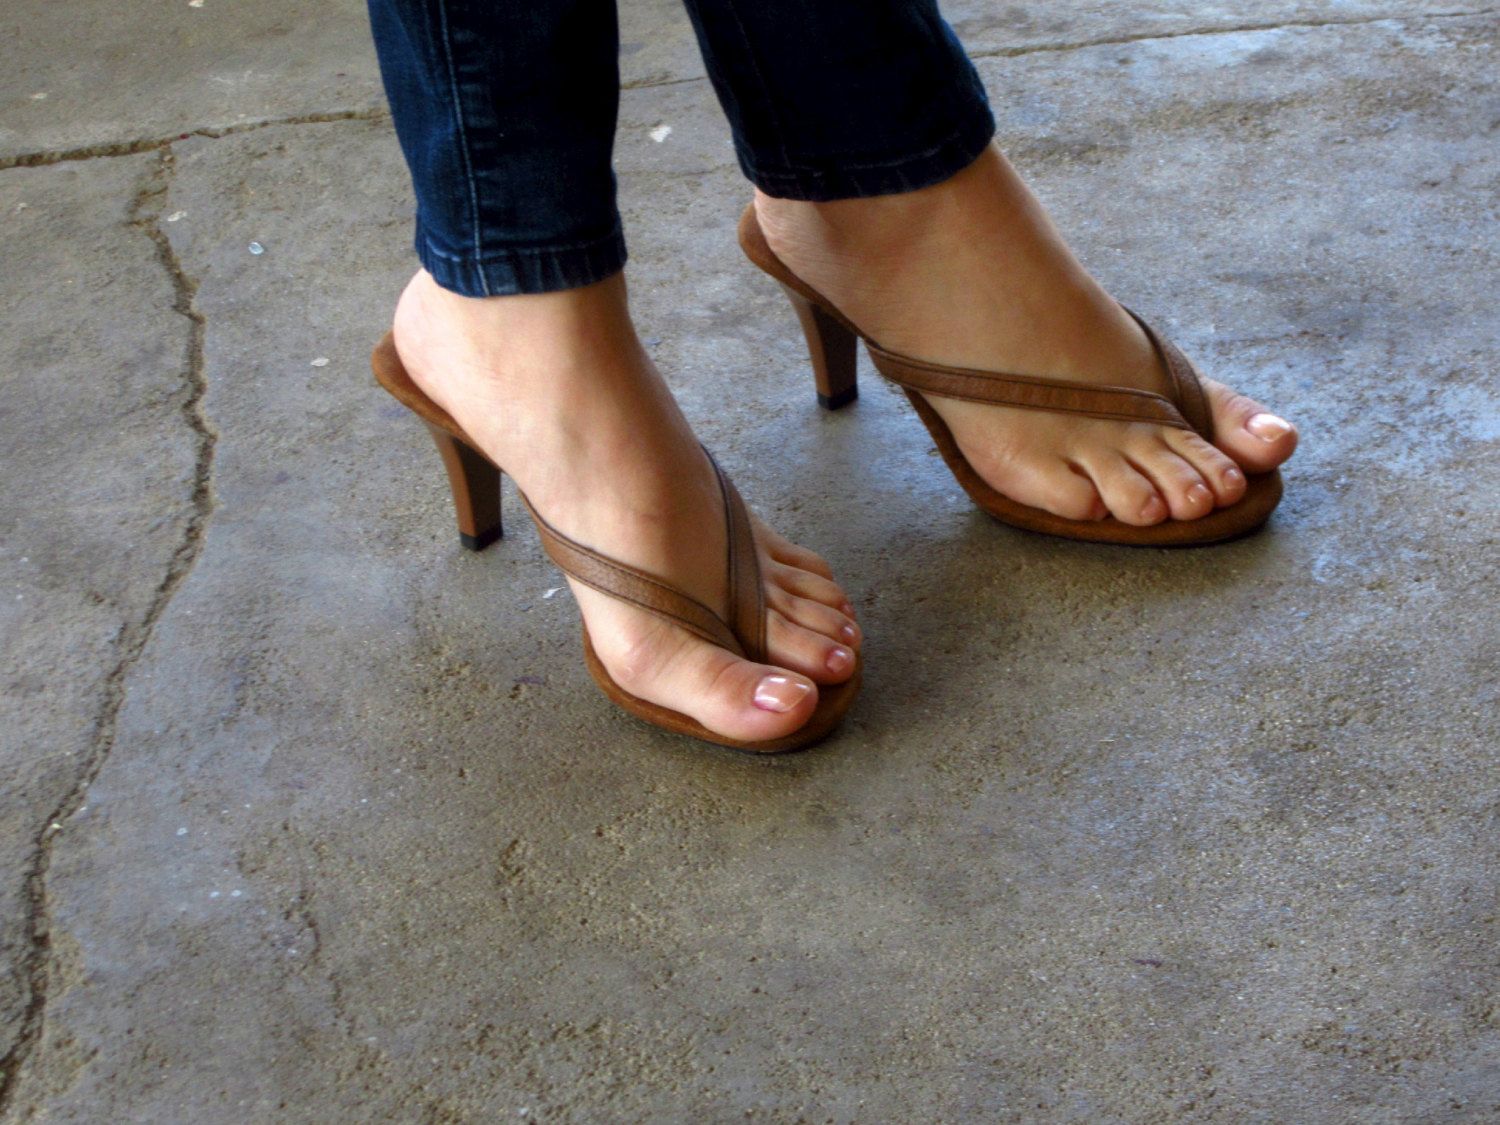 Feet in high heels thong sandals